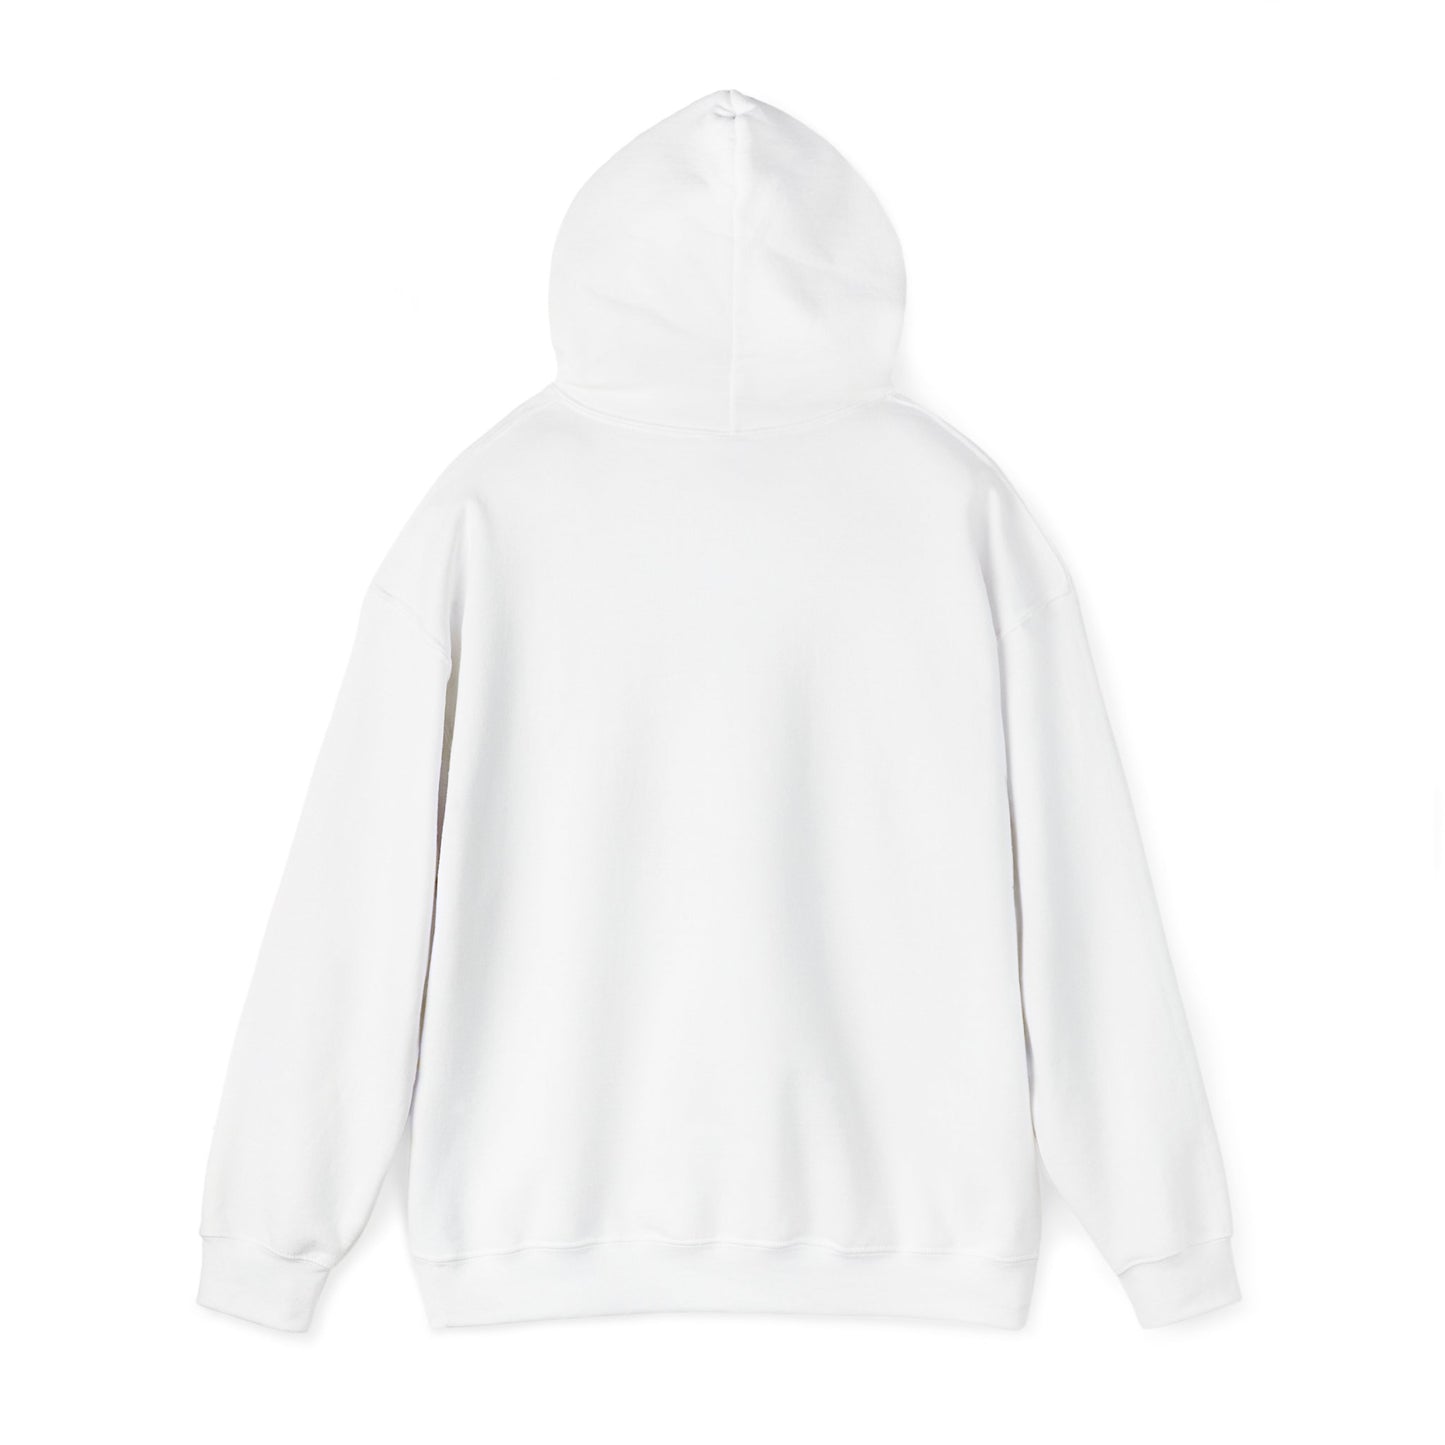 Southern Sportsman Unisex Heavy Blend™ Hooded Sweatshirt